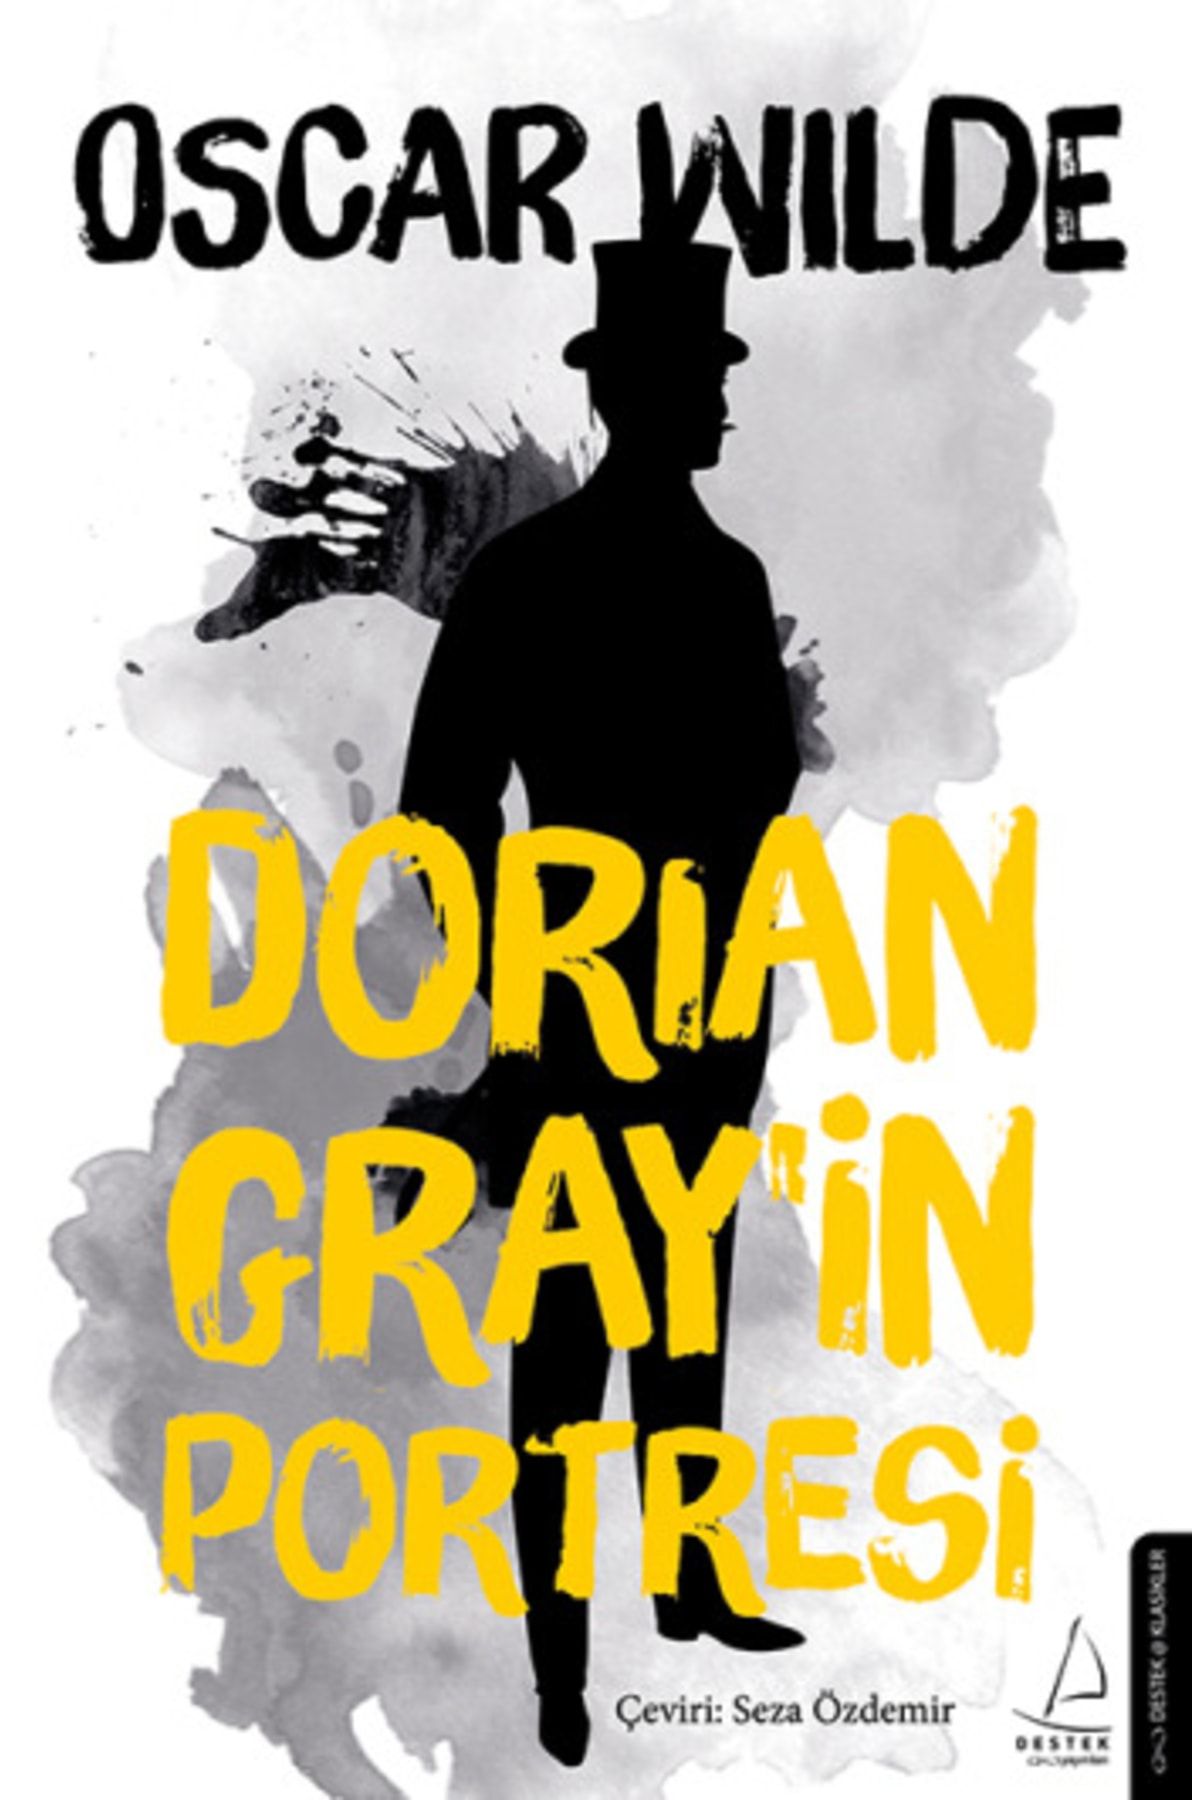 Platanus Publishing Dorian Gray'in Portresi